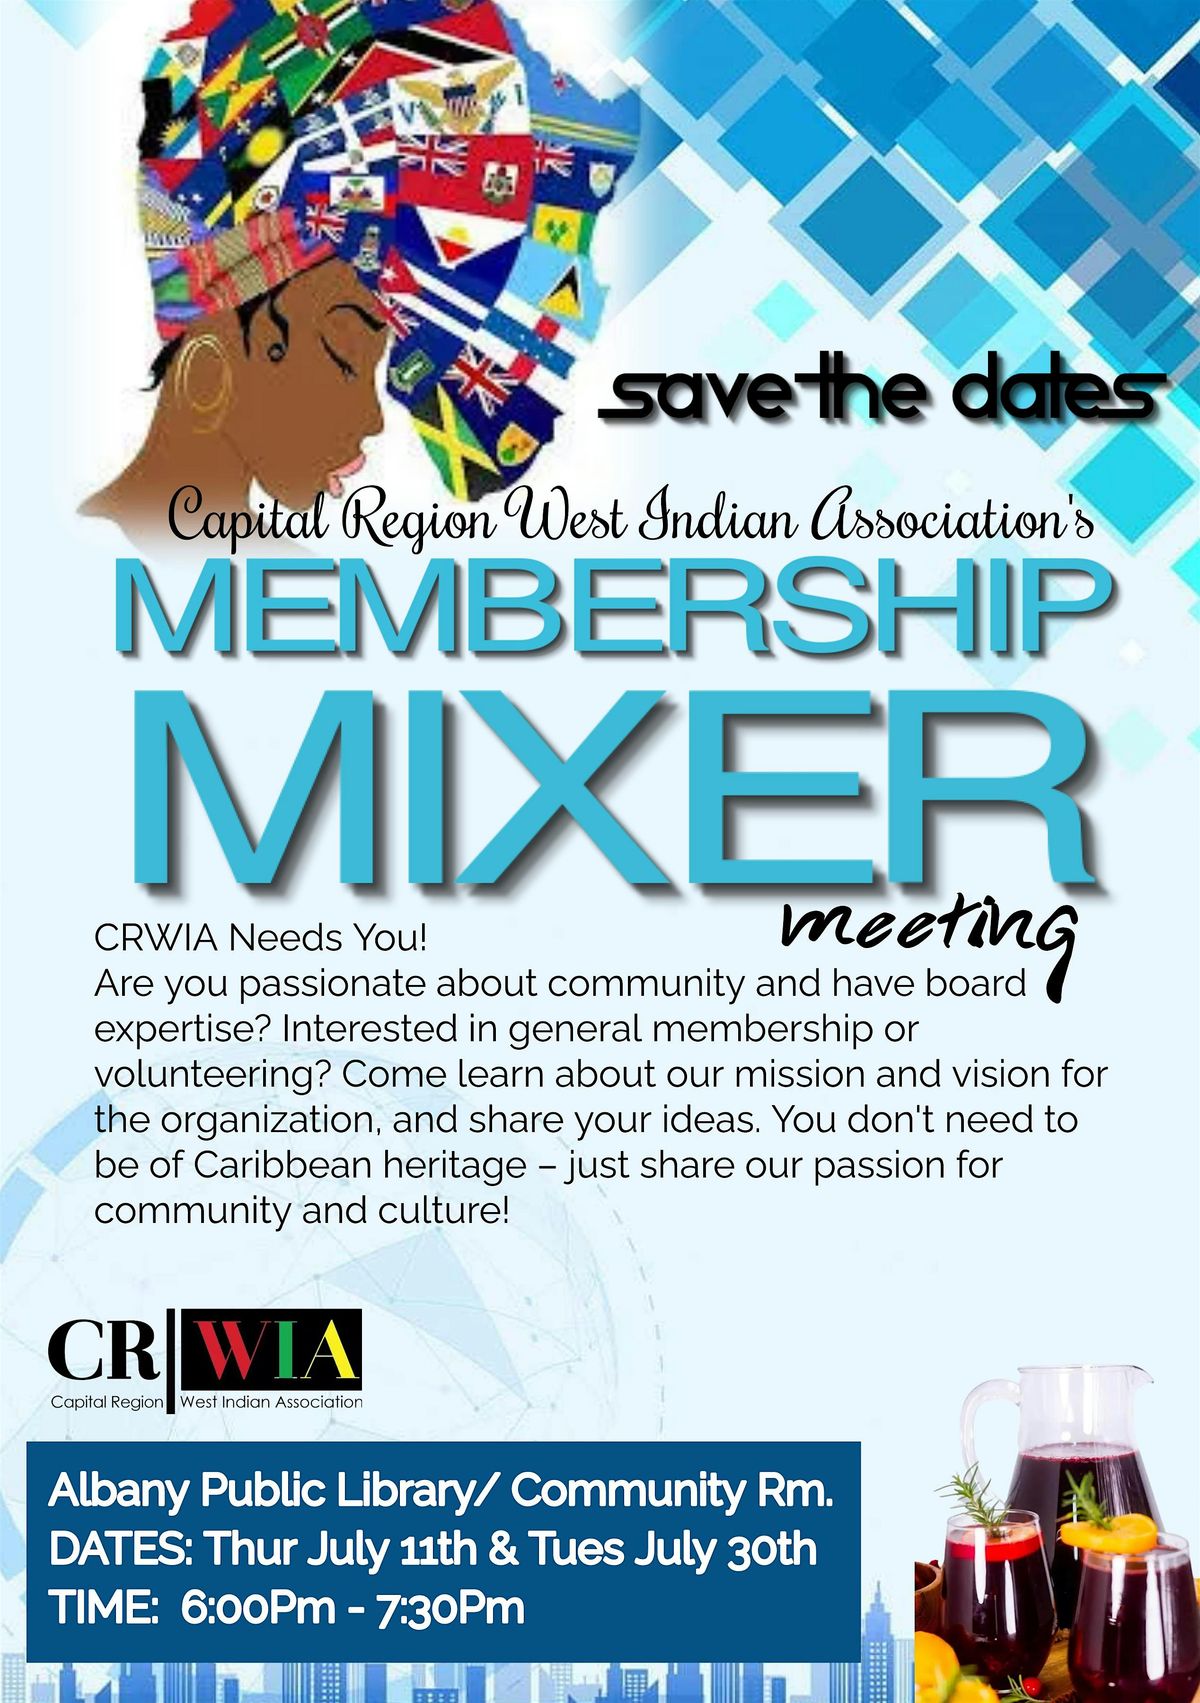 CRWIA Membership Mixer Meeting